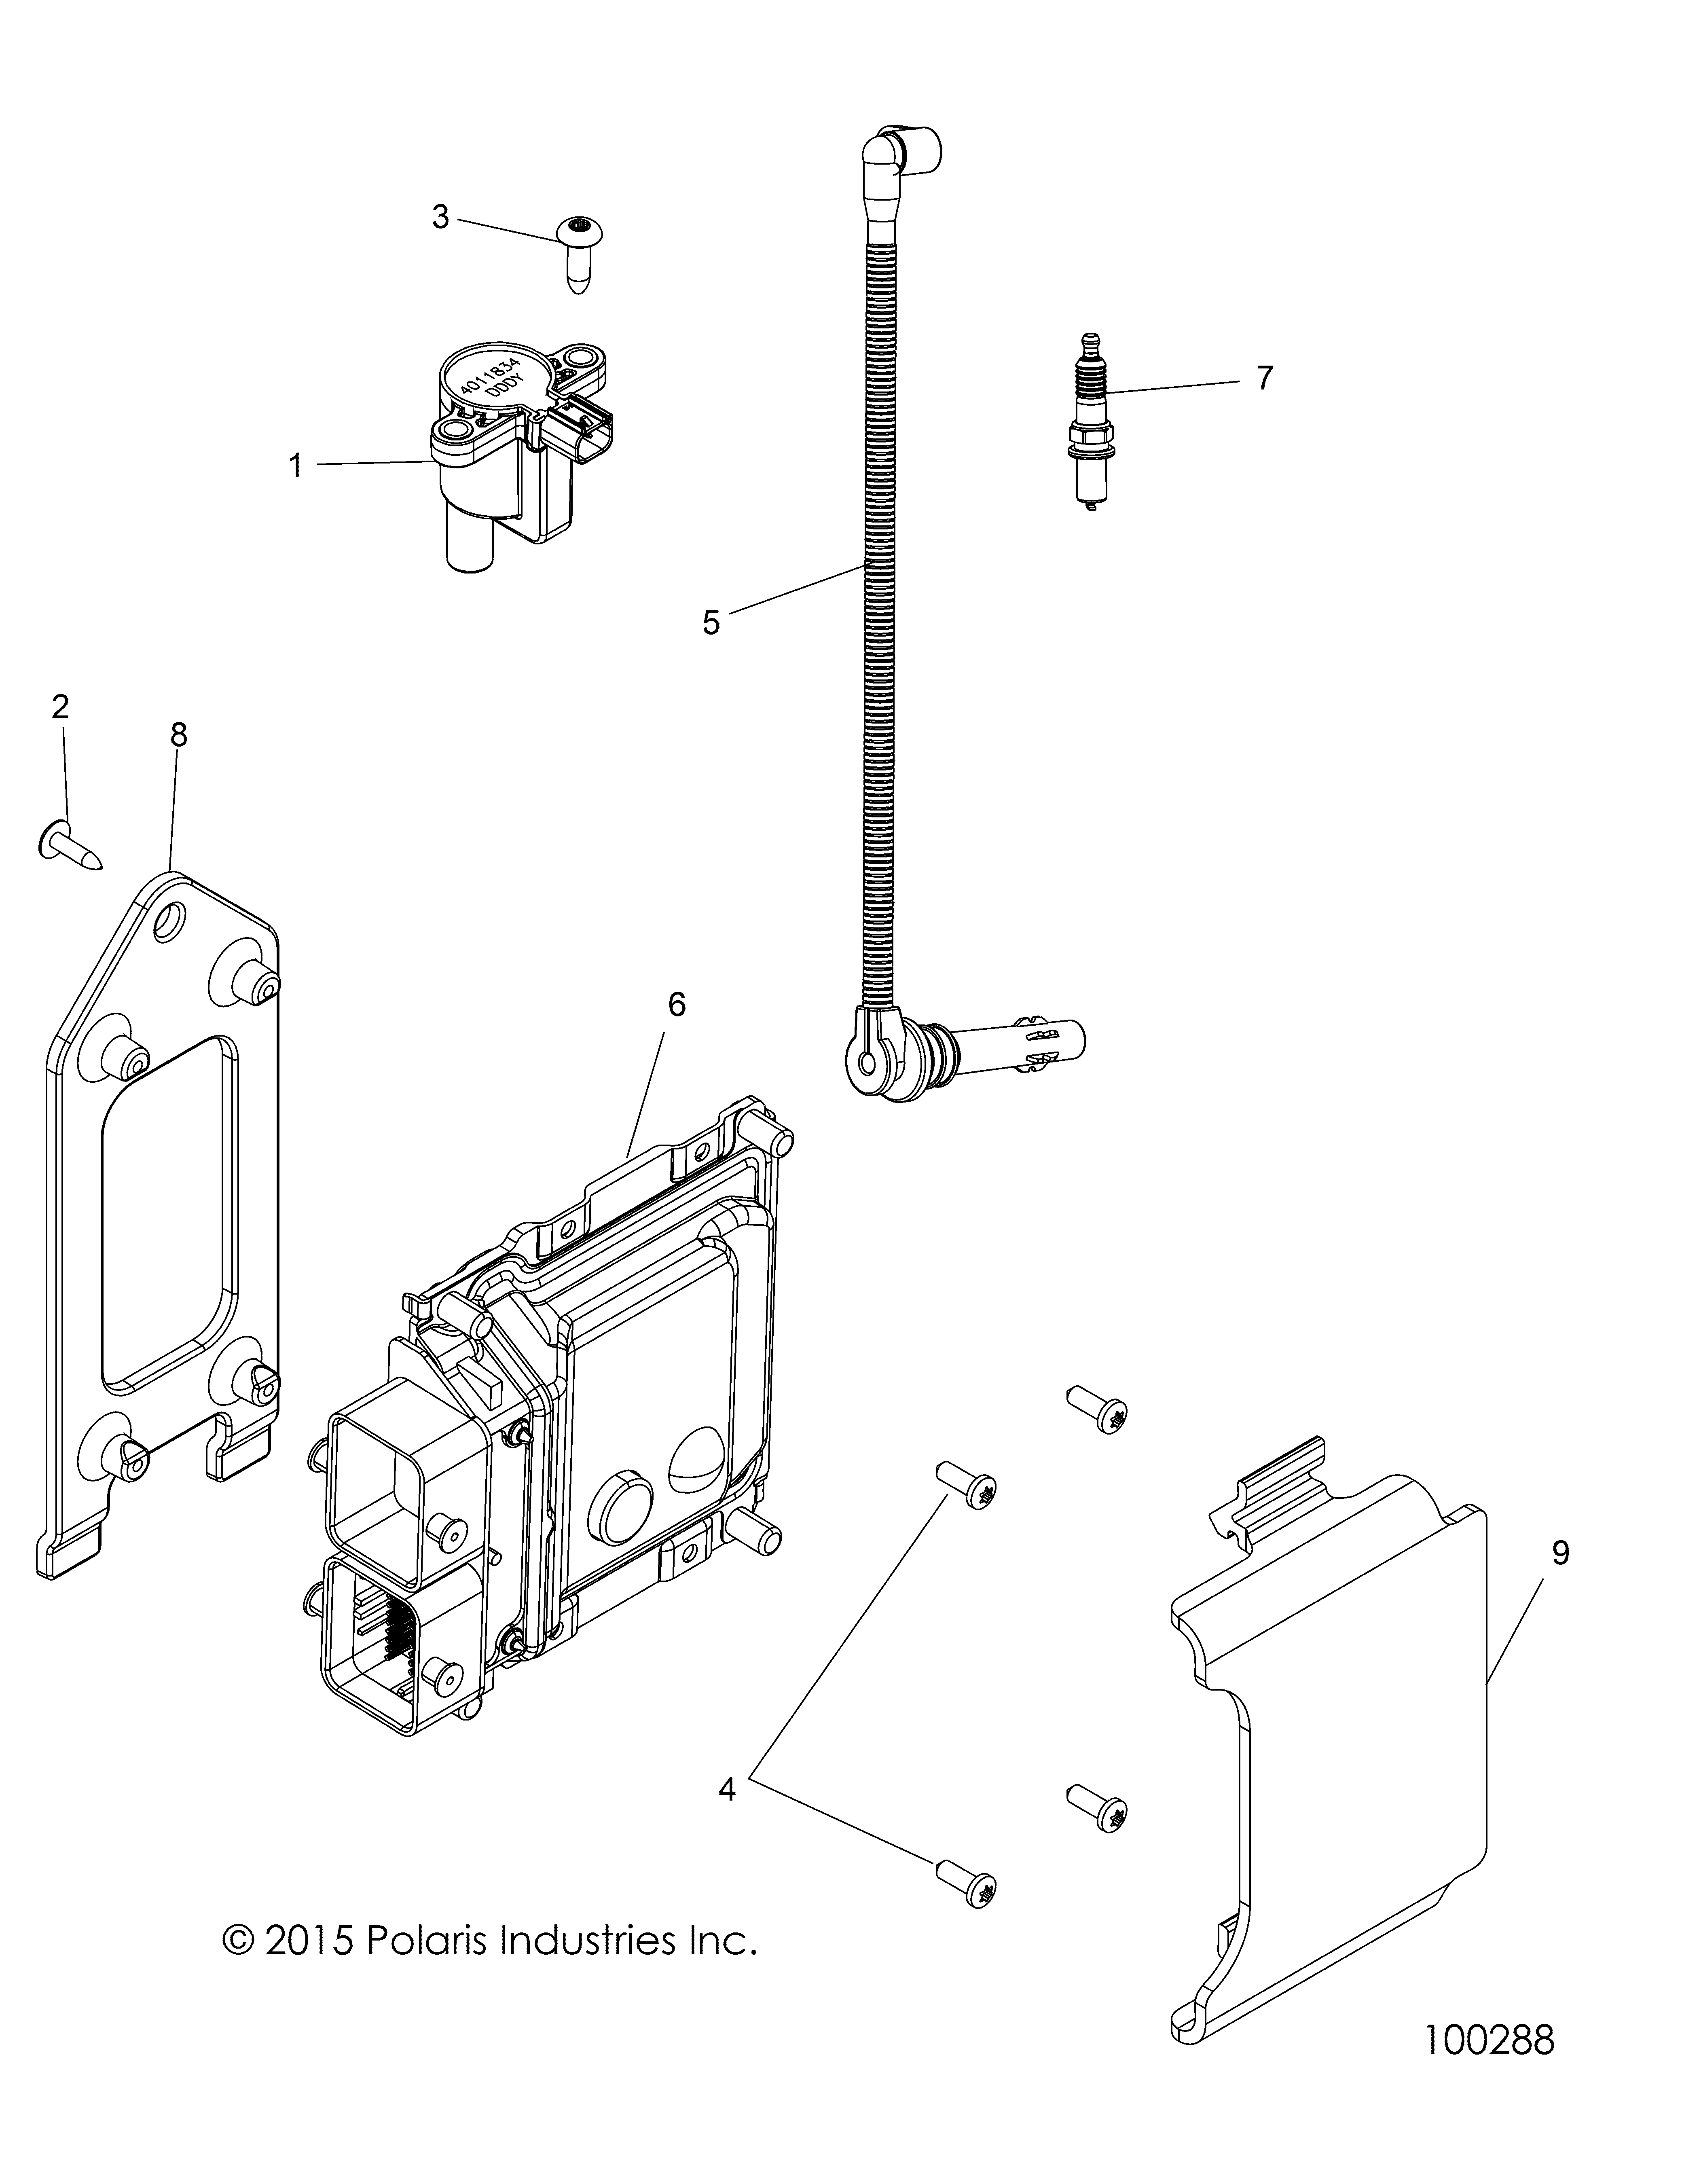 Foto diagrama Polaris que contem a peça 4014795